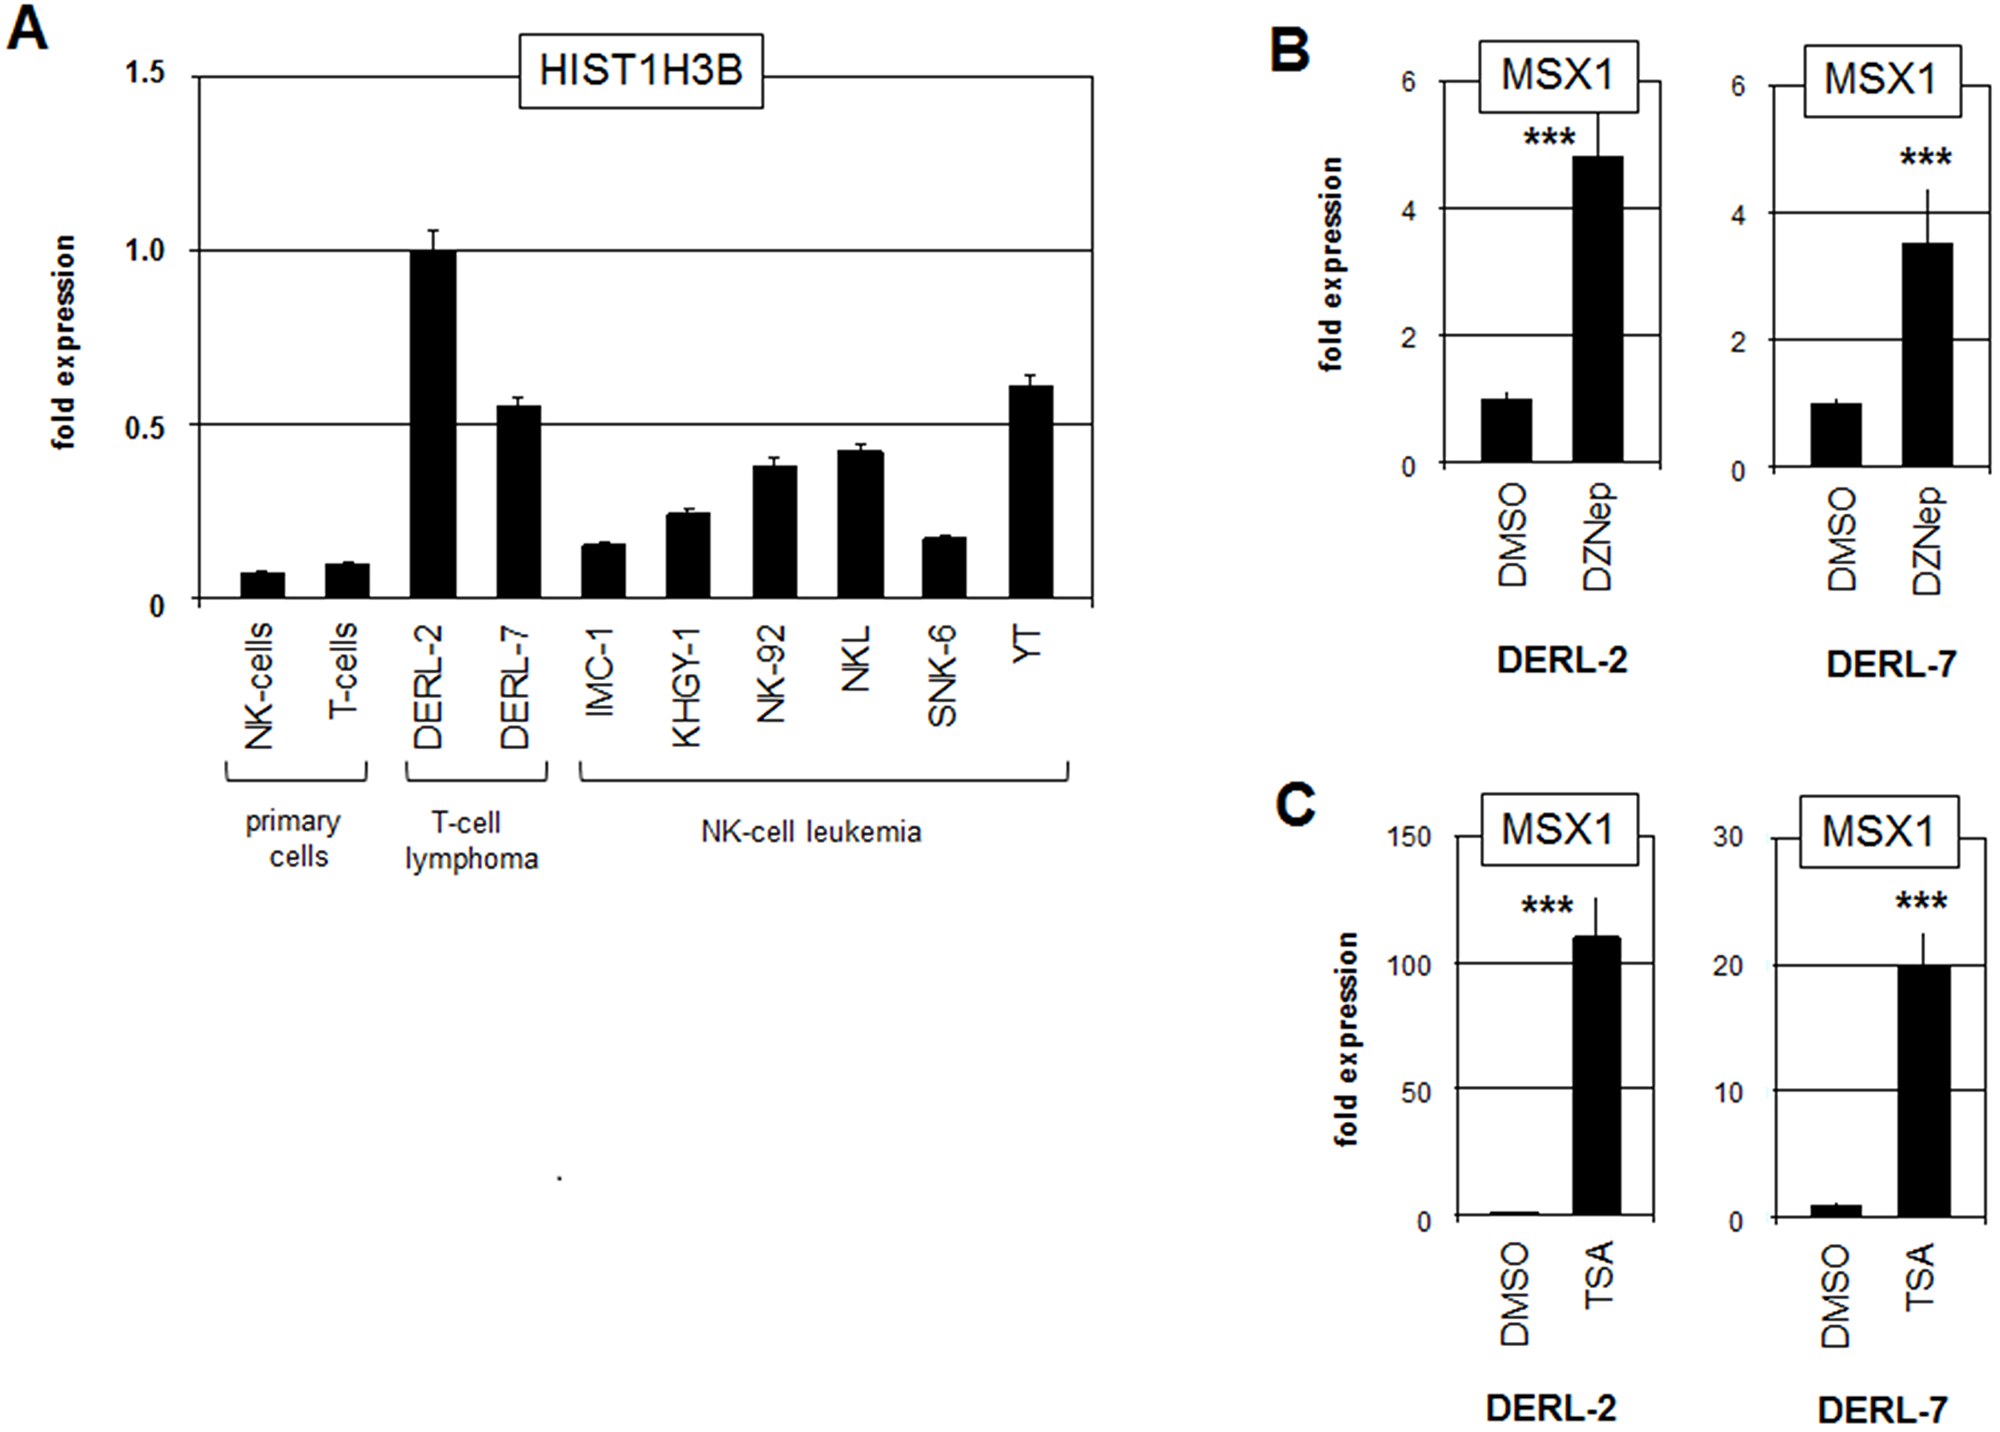 Analysis of mutated histone HIST1H3B.